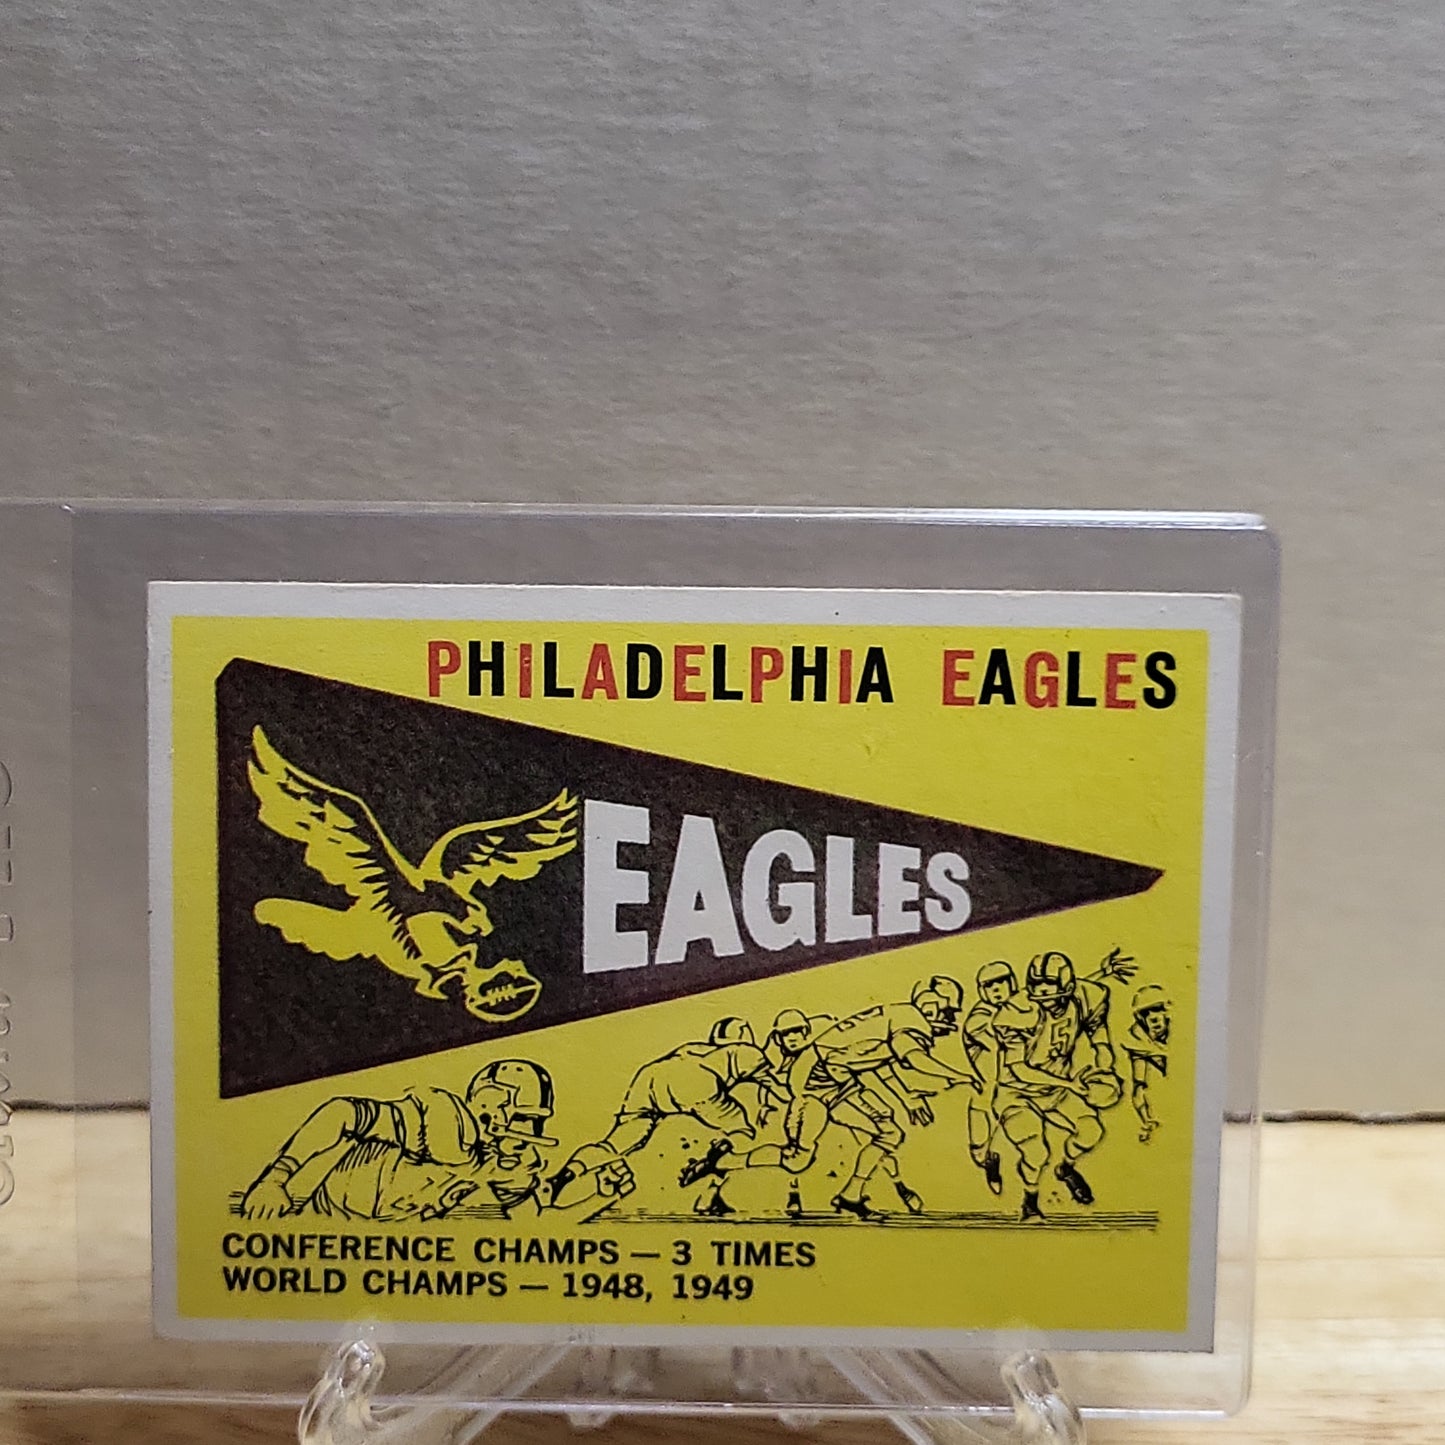 1959 Topps Philadelphia Eagles Team Pennant #83(EX)